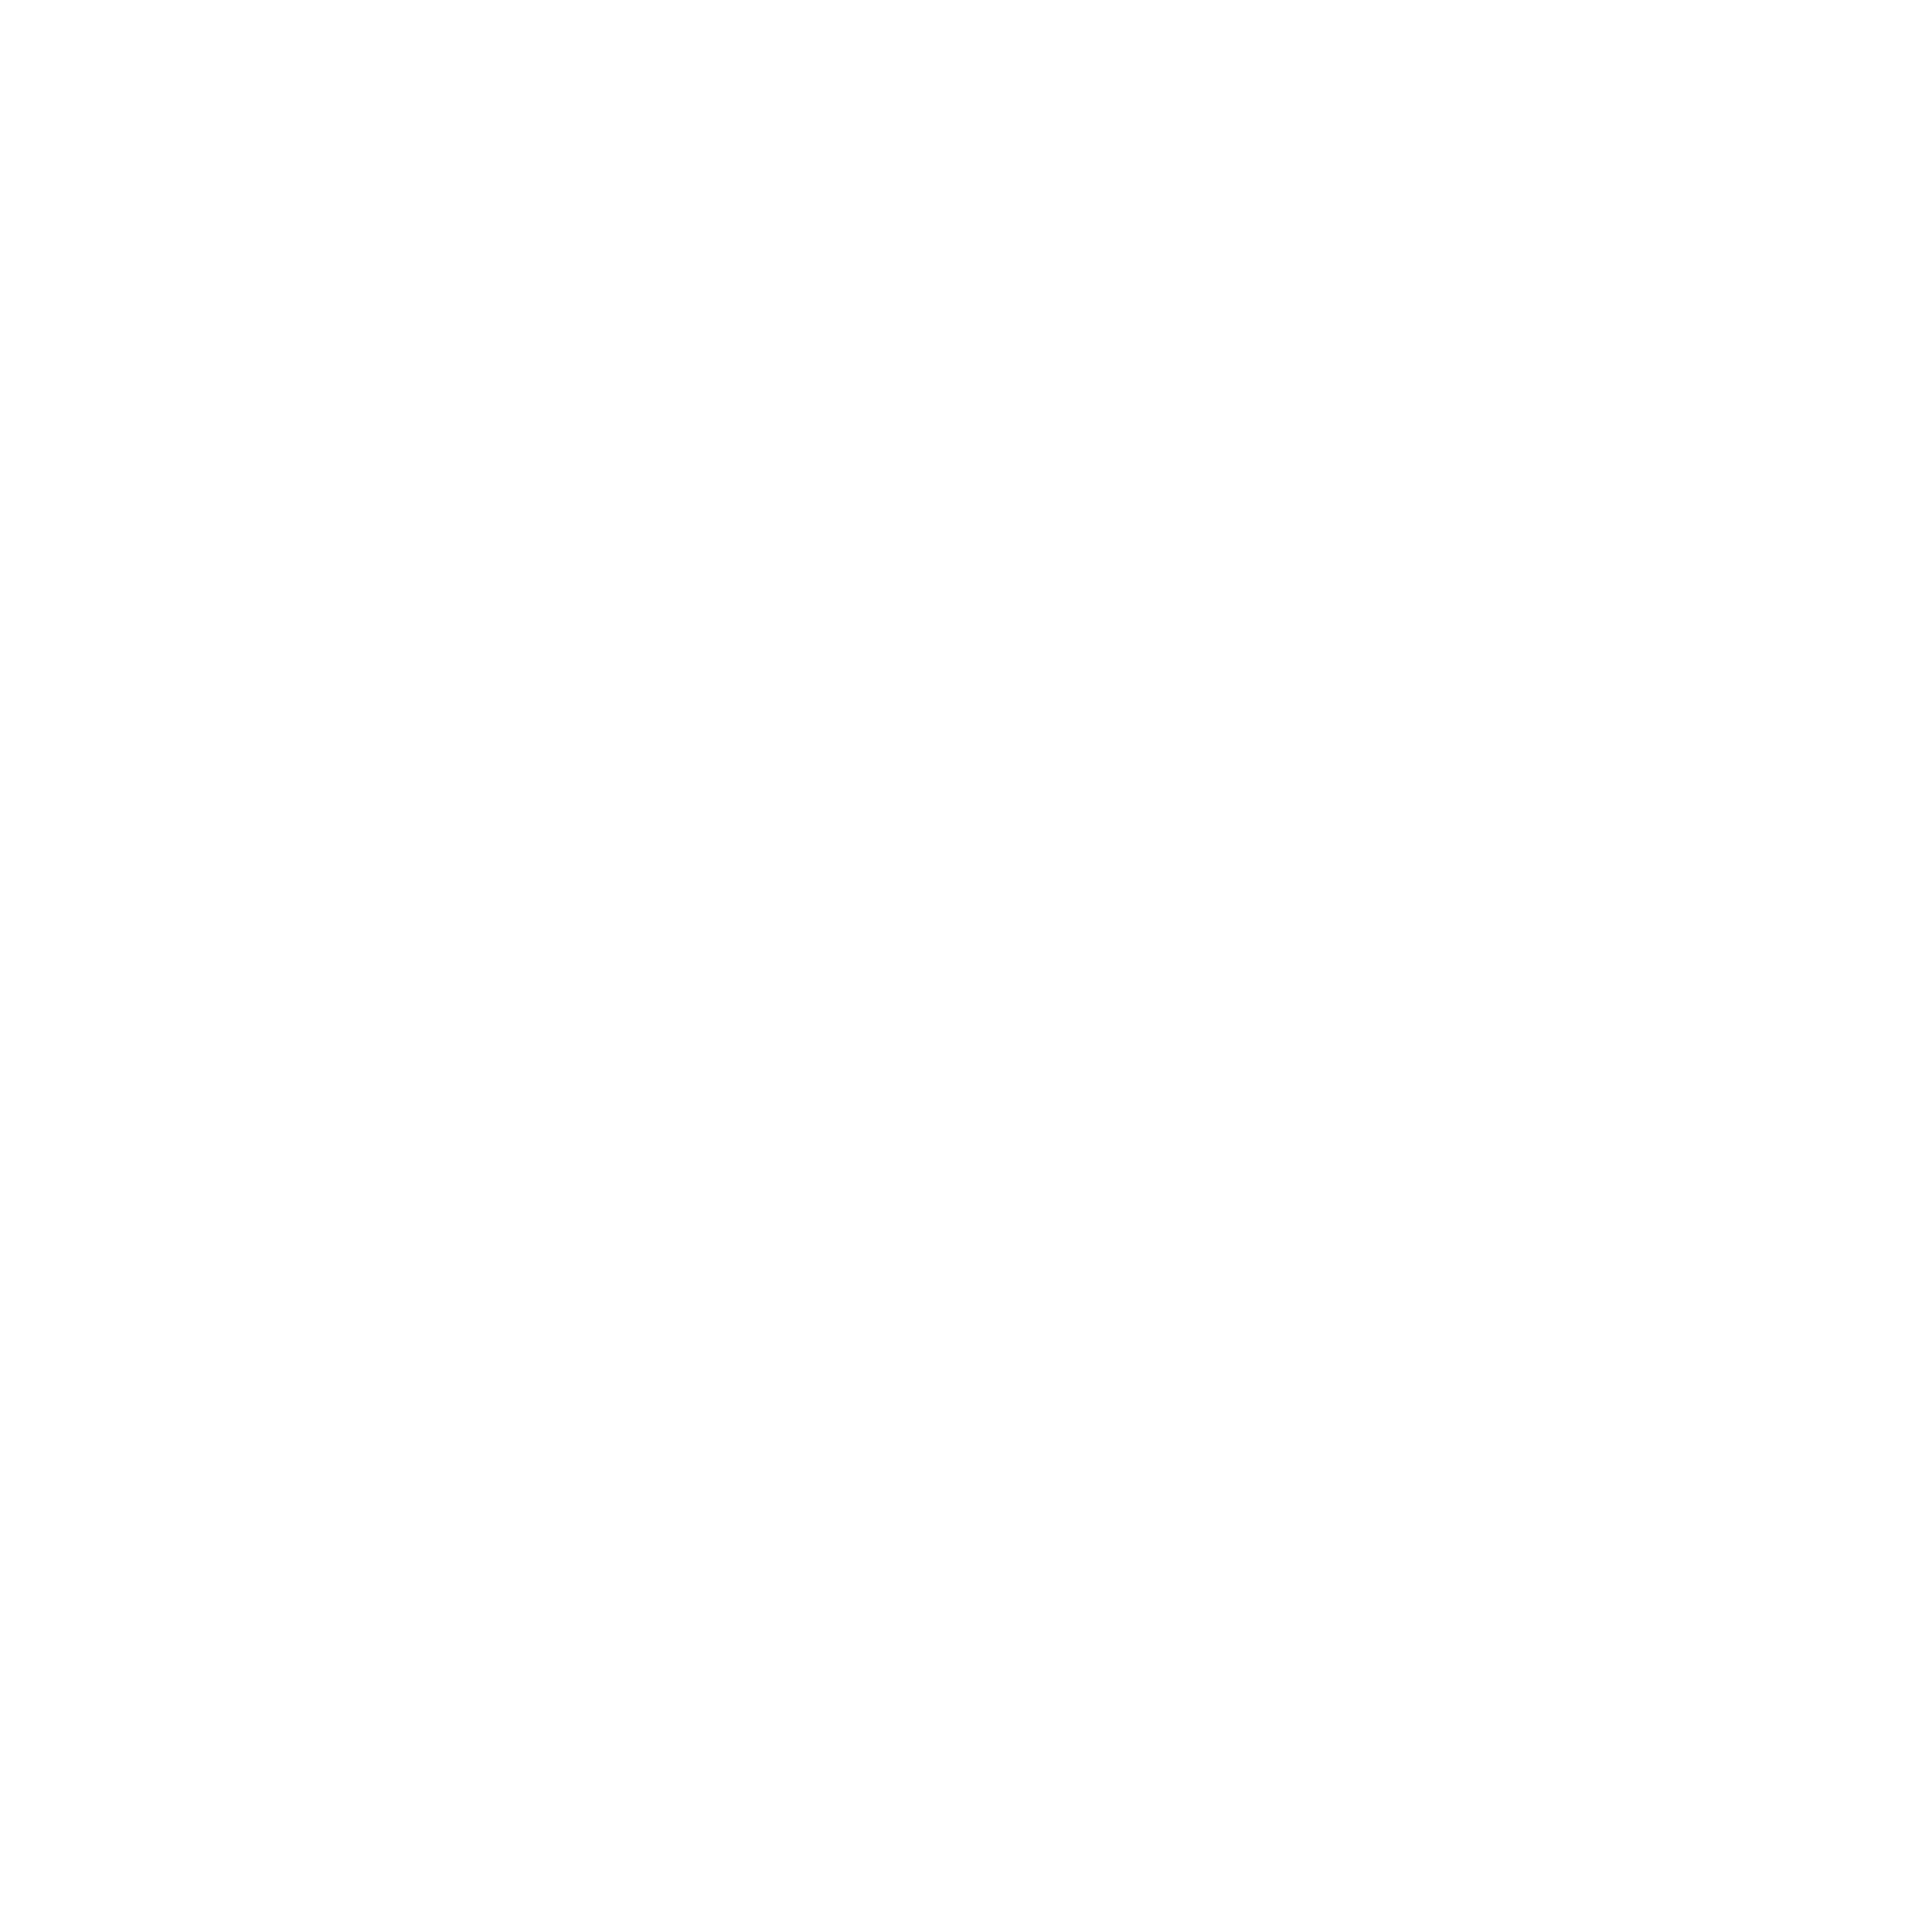 AgTech Hackathon • 2019